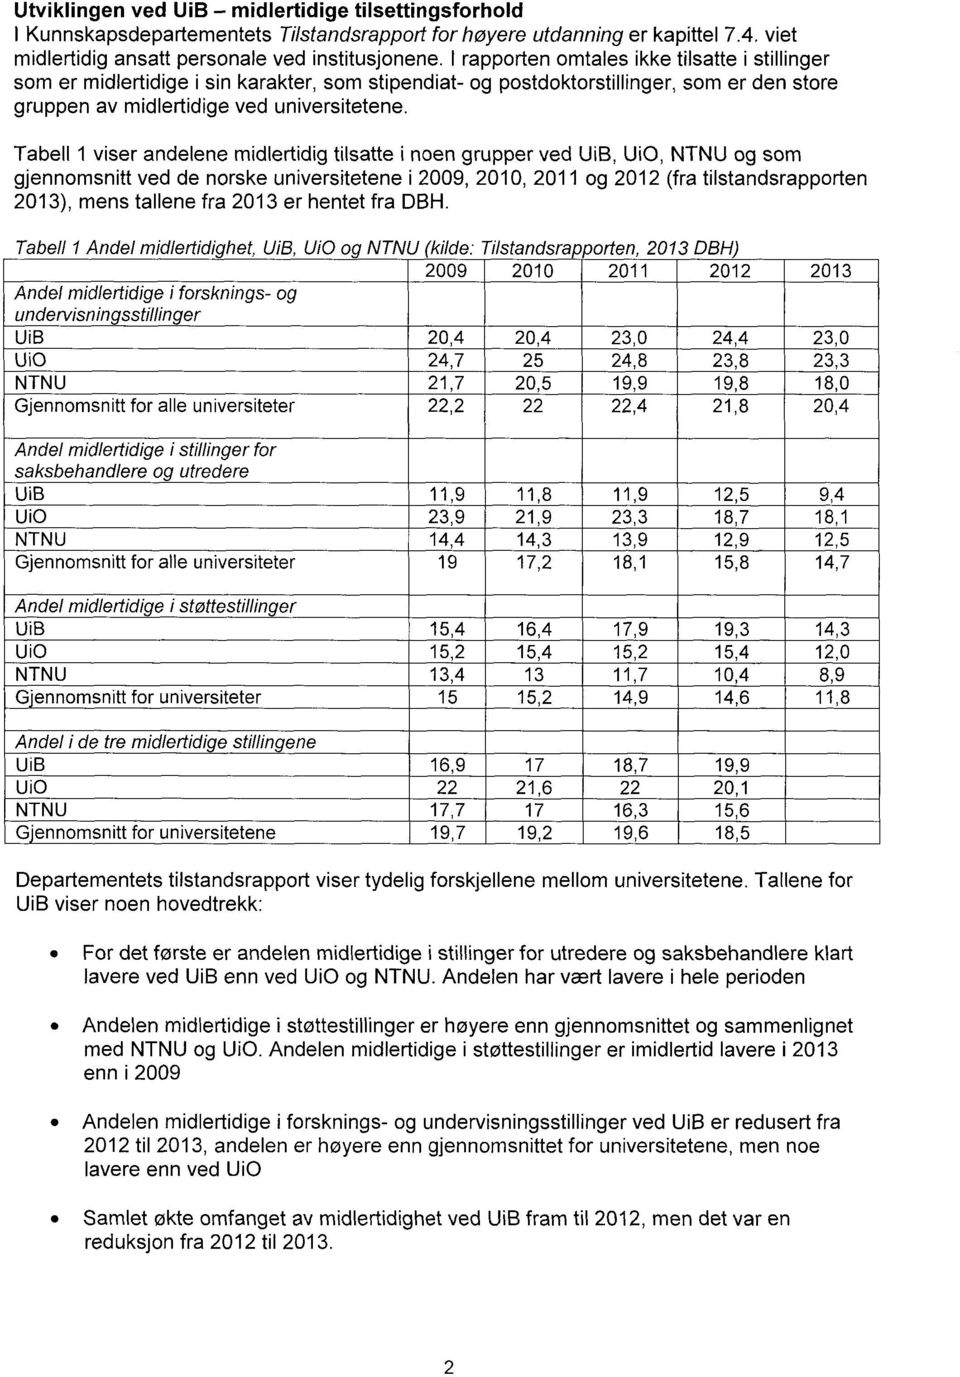 Tabell 1 viser andelene midlertidig tilsatte i noen grupper ved UiB, Ui0, NTNU og som gjennomsnitt ved de norske universitetene i 2009, 2010, 2011 og 2012 (fra tilstandsrapporten 2013), mens tallene